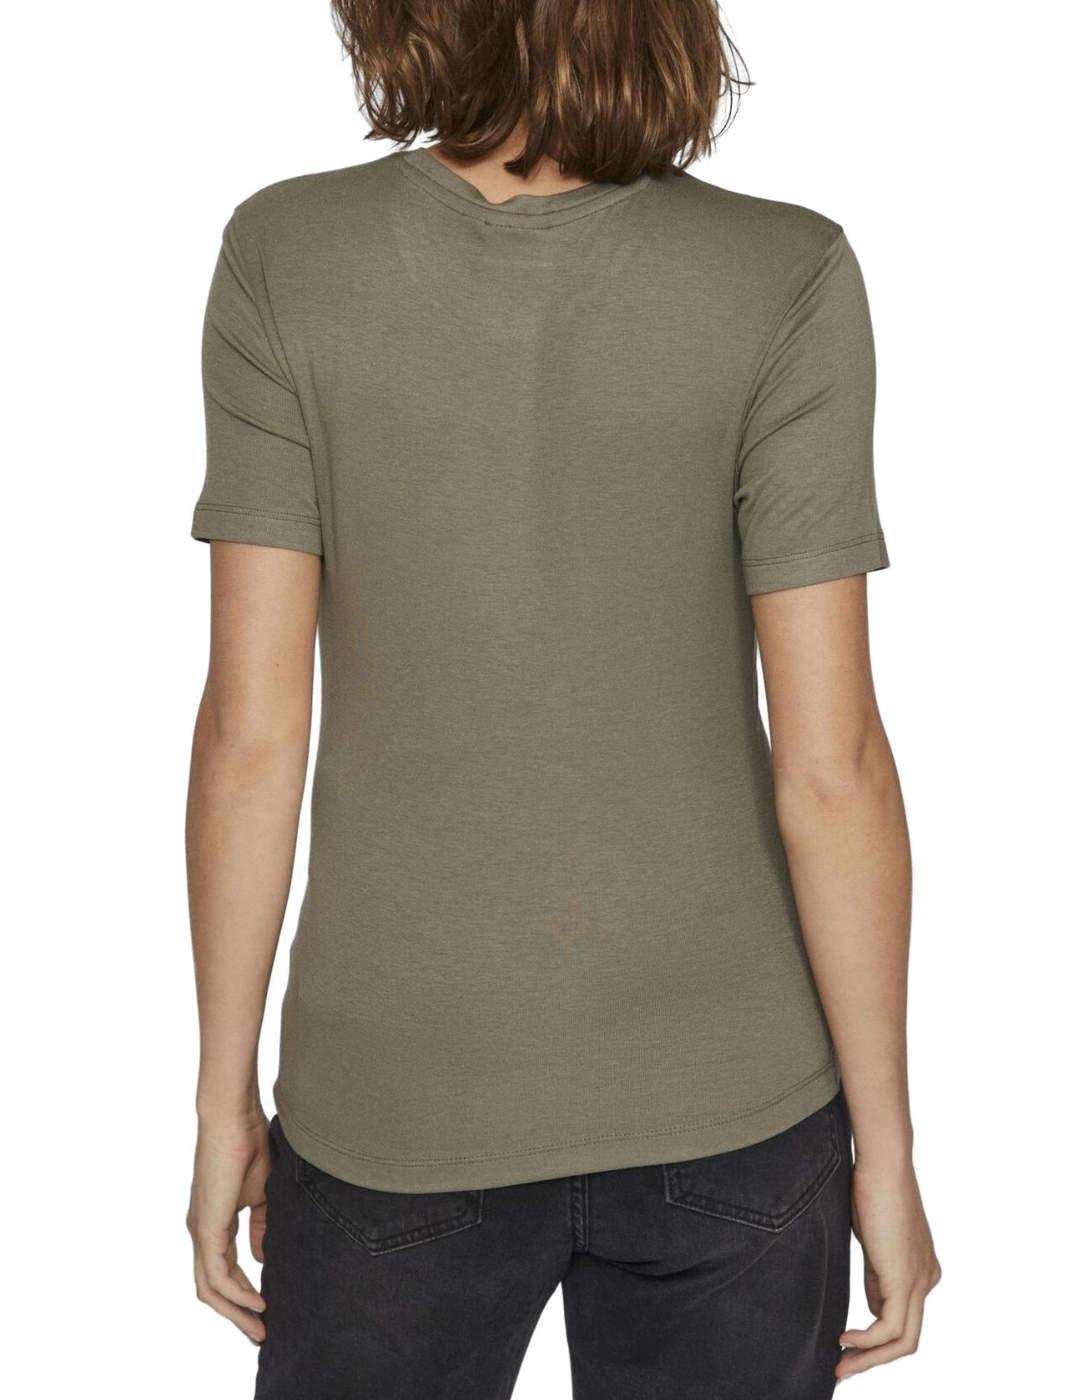 Camiseta básica Vila Alexia verde de manga corta para mujer